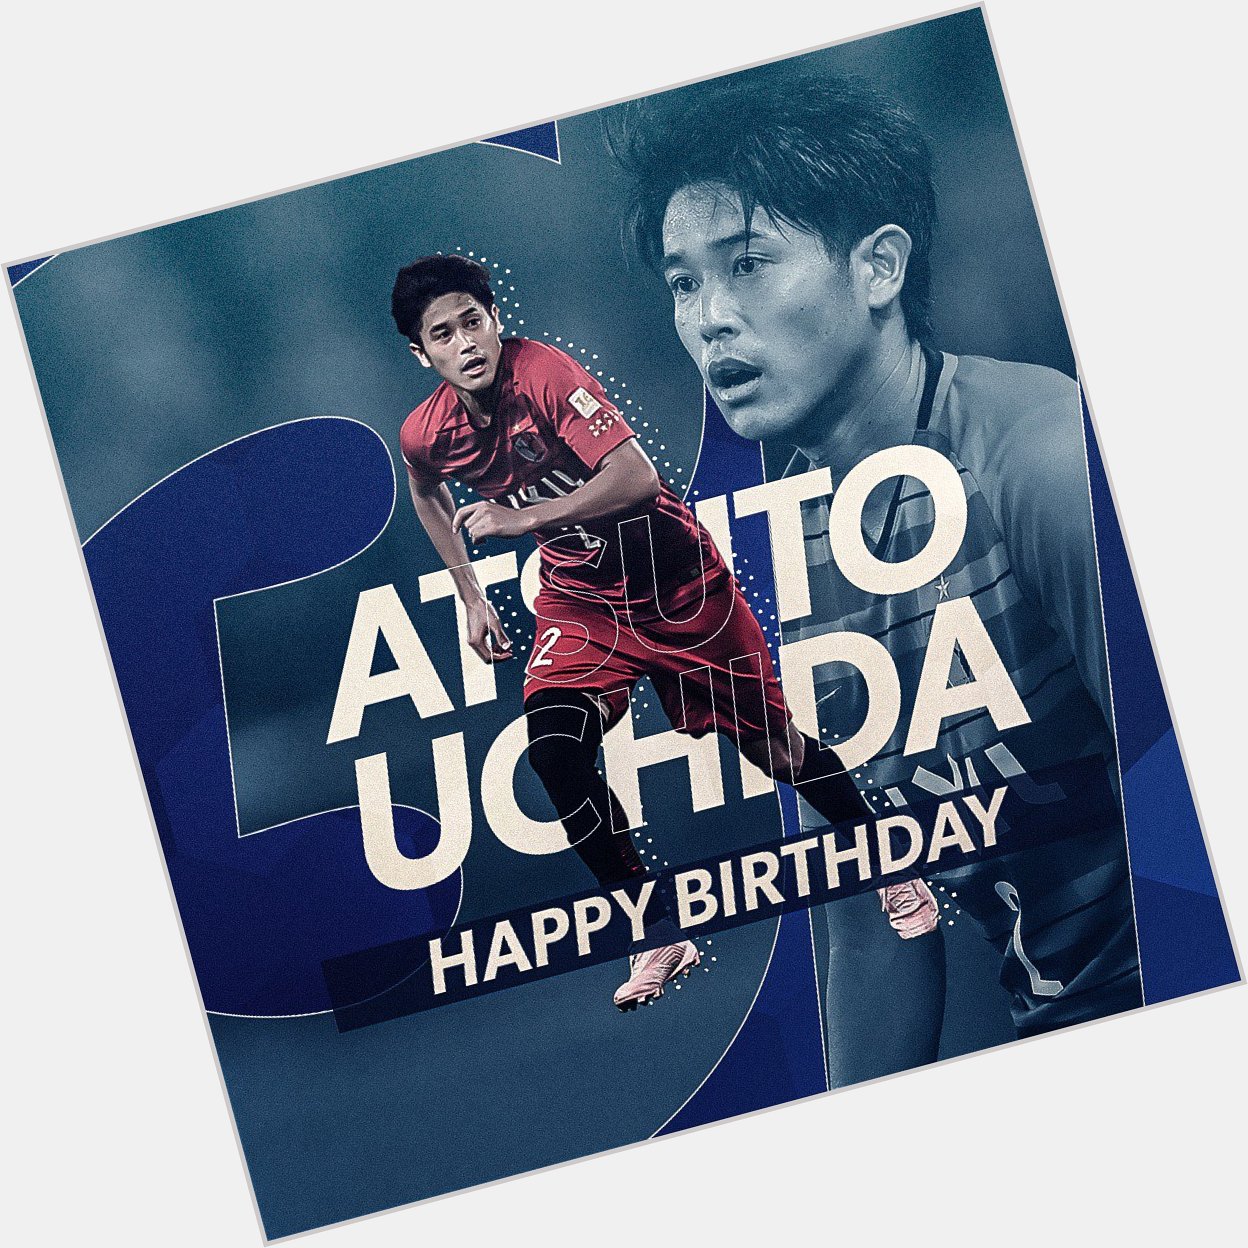 Here\s wishing Atsuto Uchida a very happy birthday! 